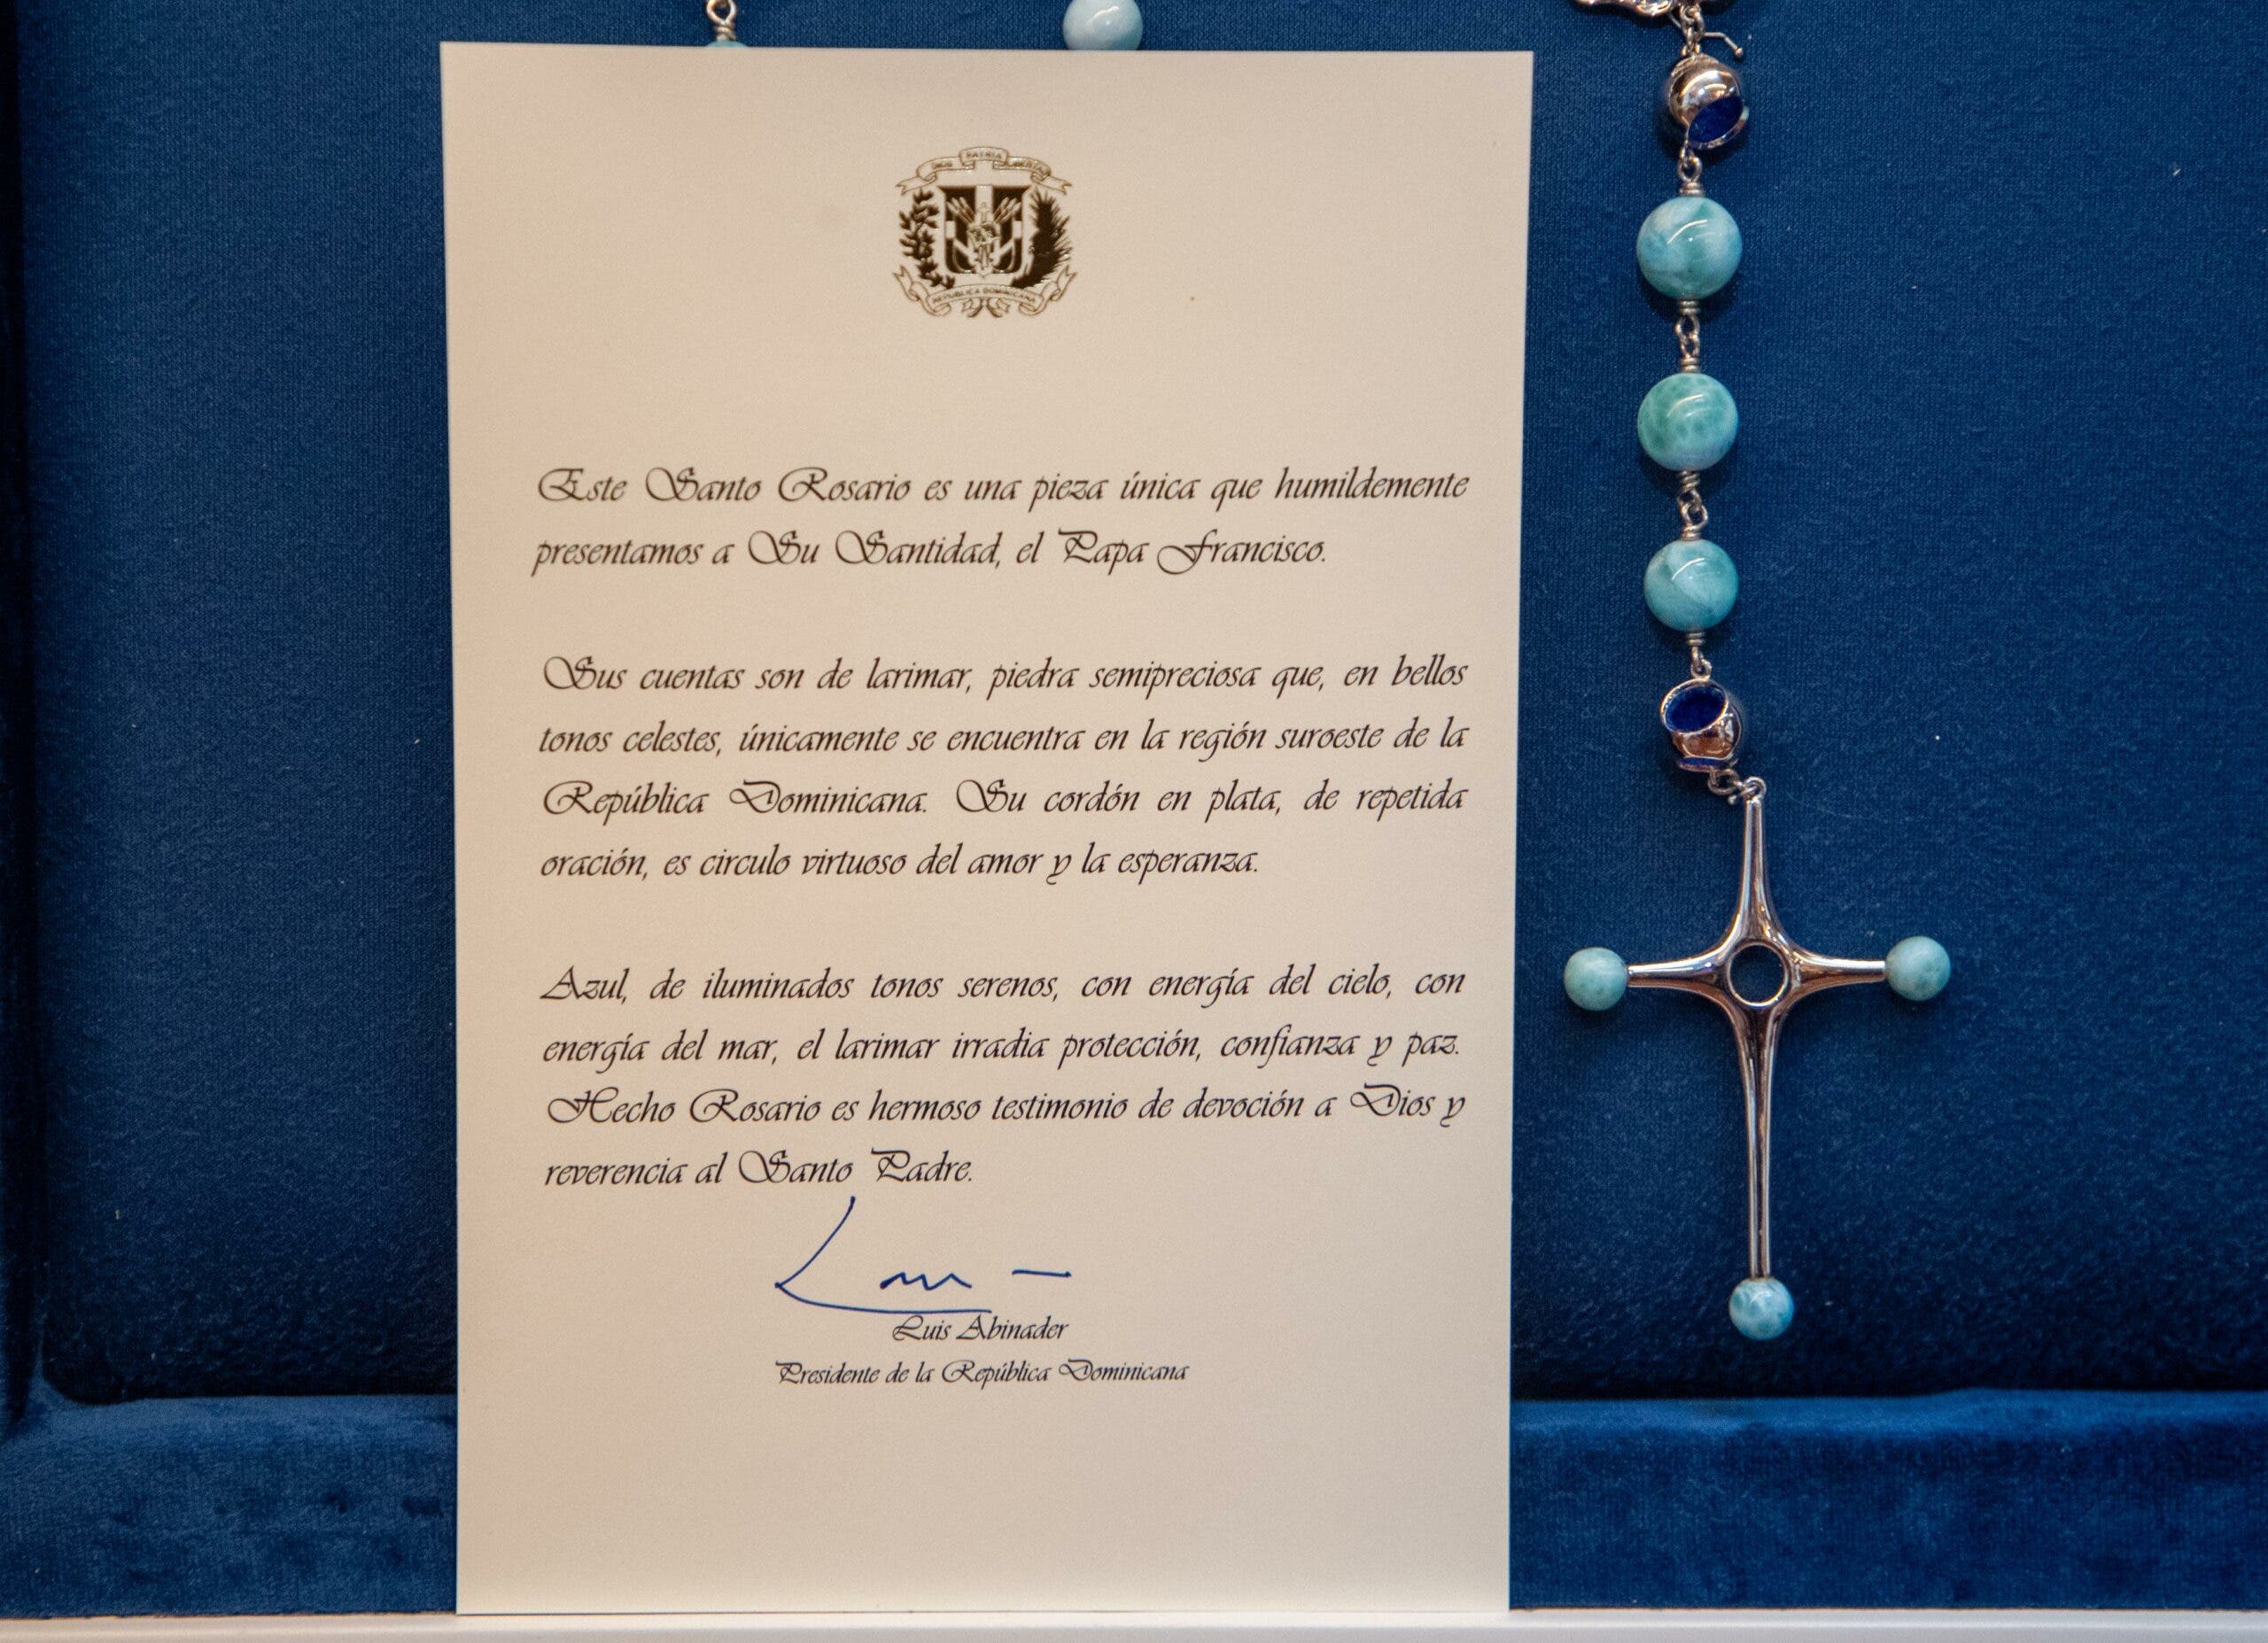 Larimar: La piedra azul de República Dominicana que Abinader obsequió al papa Francisco en un rosario 